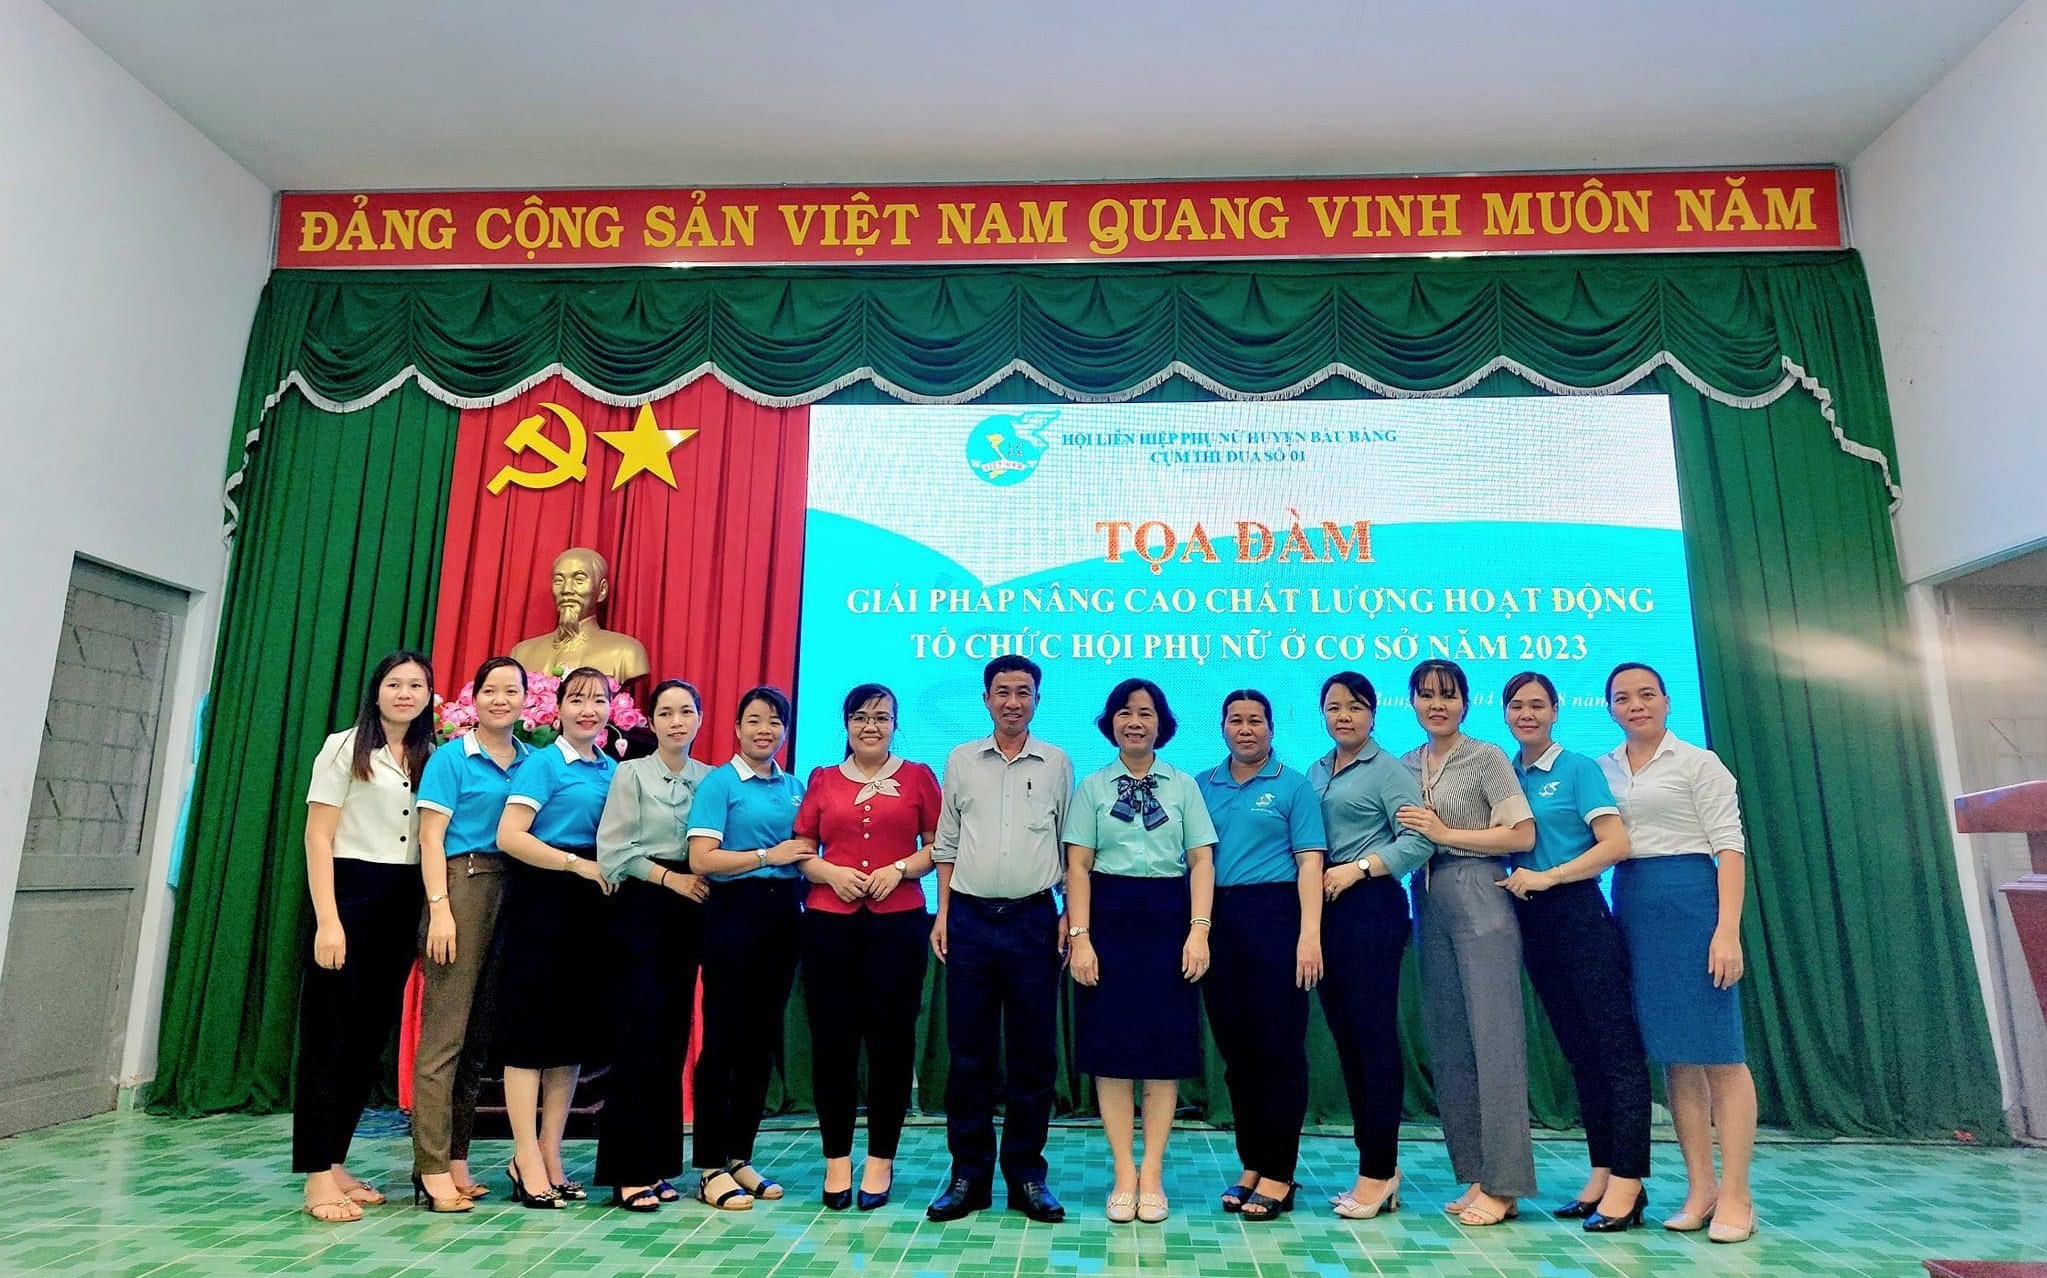 Hội LHPN thị trấn Lai Uyên tổ chức Tọa đàm “Giải pháp nâng cao chất lượng hoạt động tổ chức Hội phụ nữ cơ sở” năm 2023